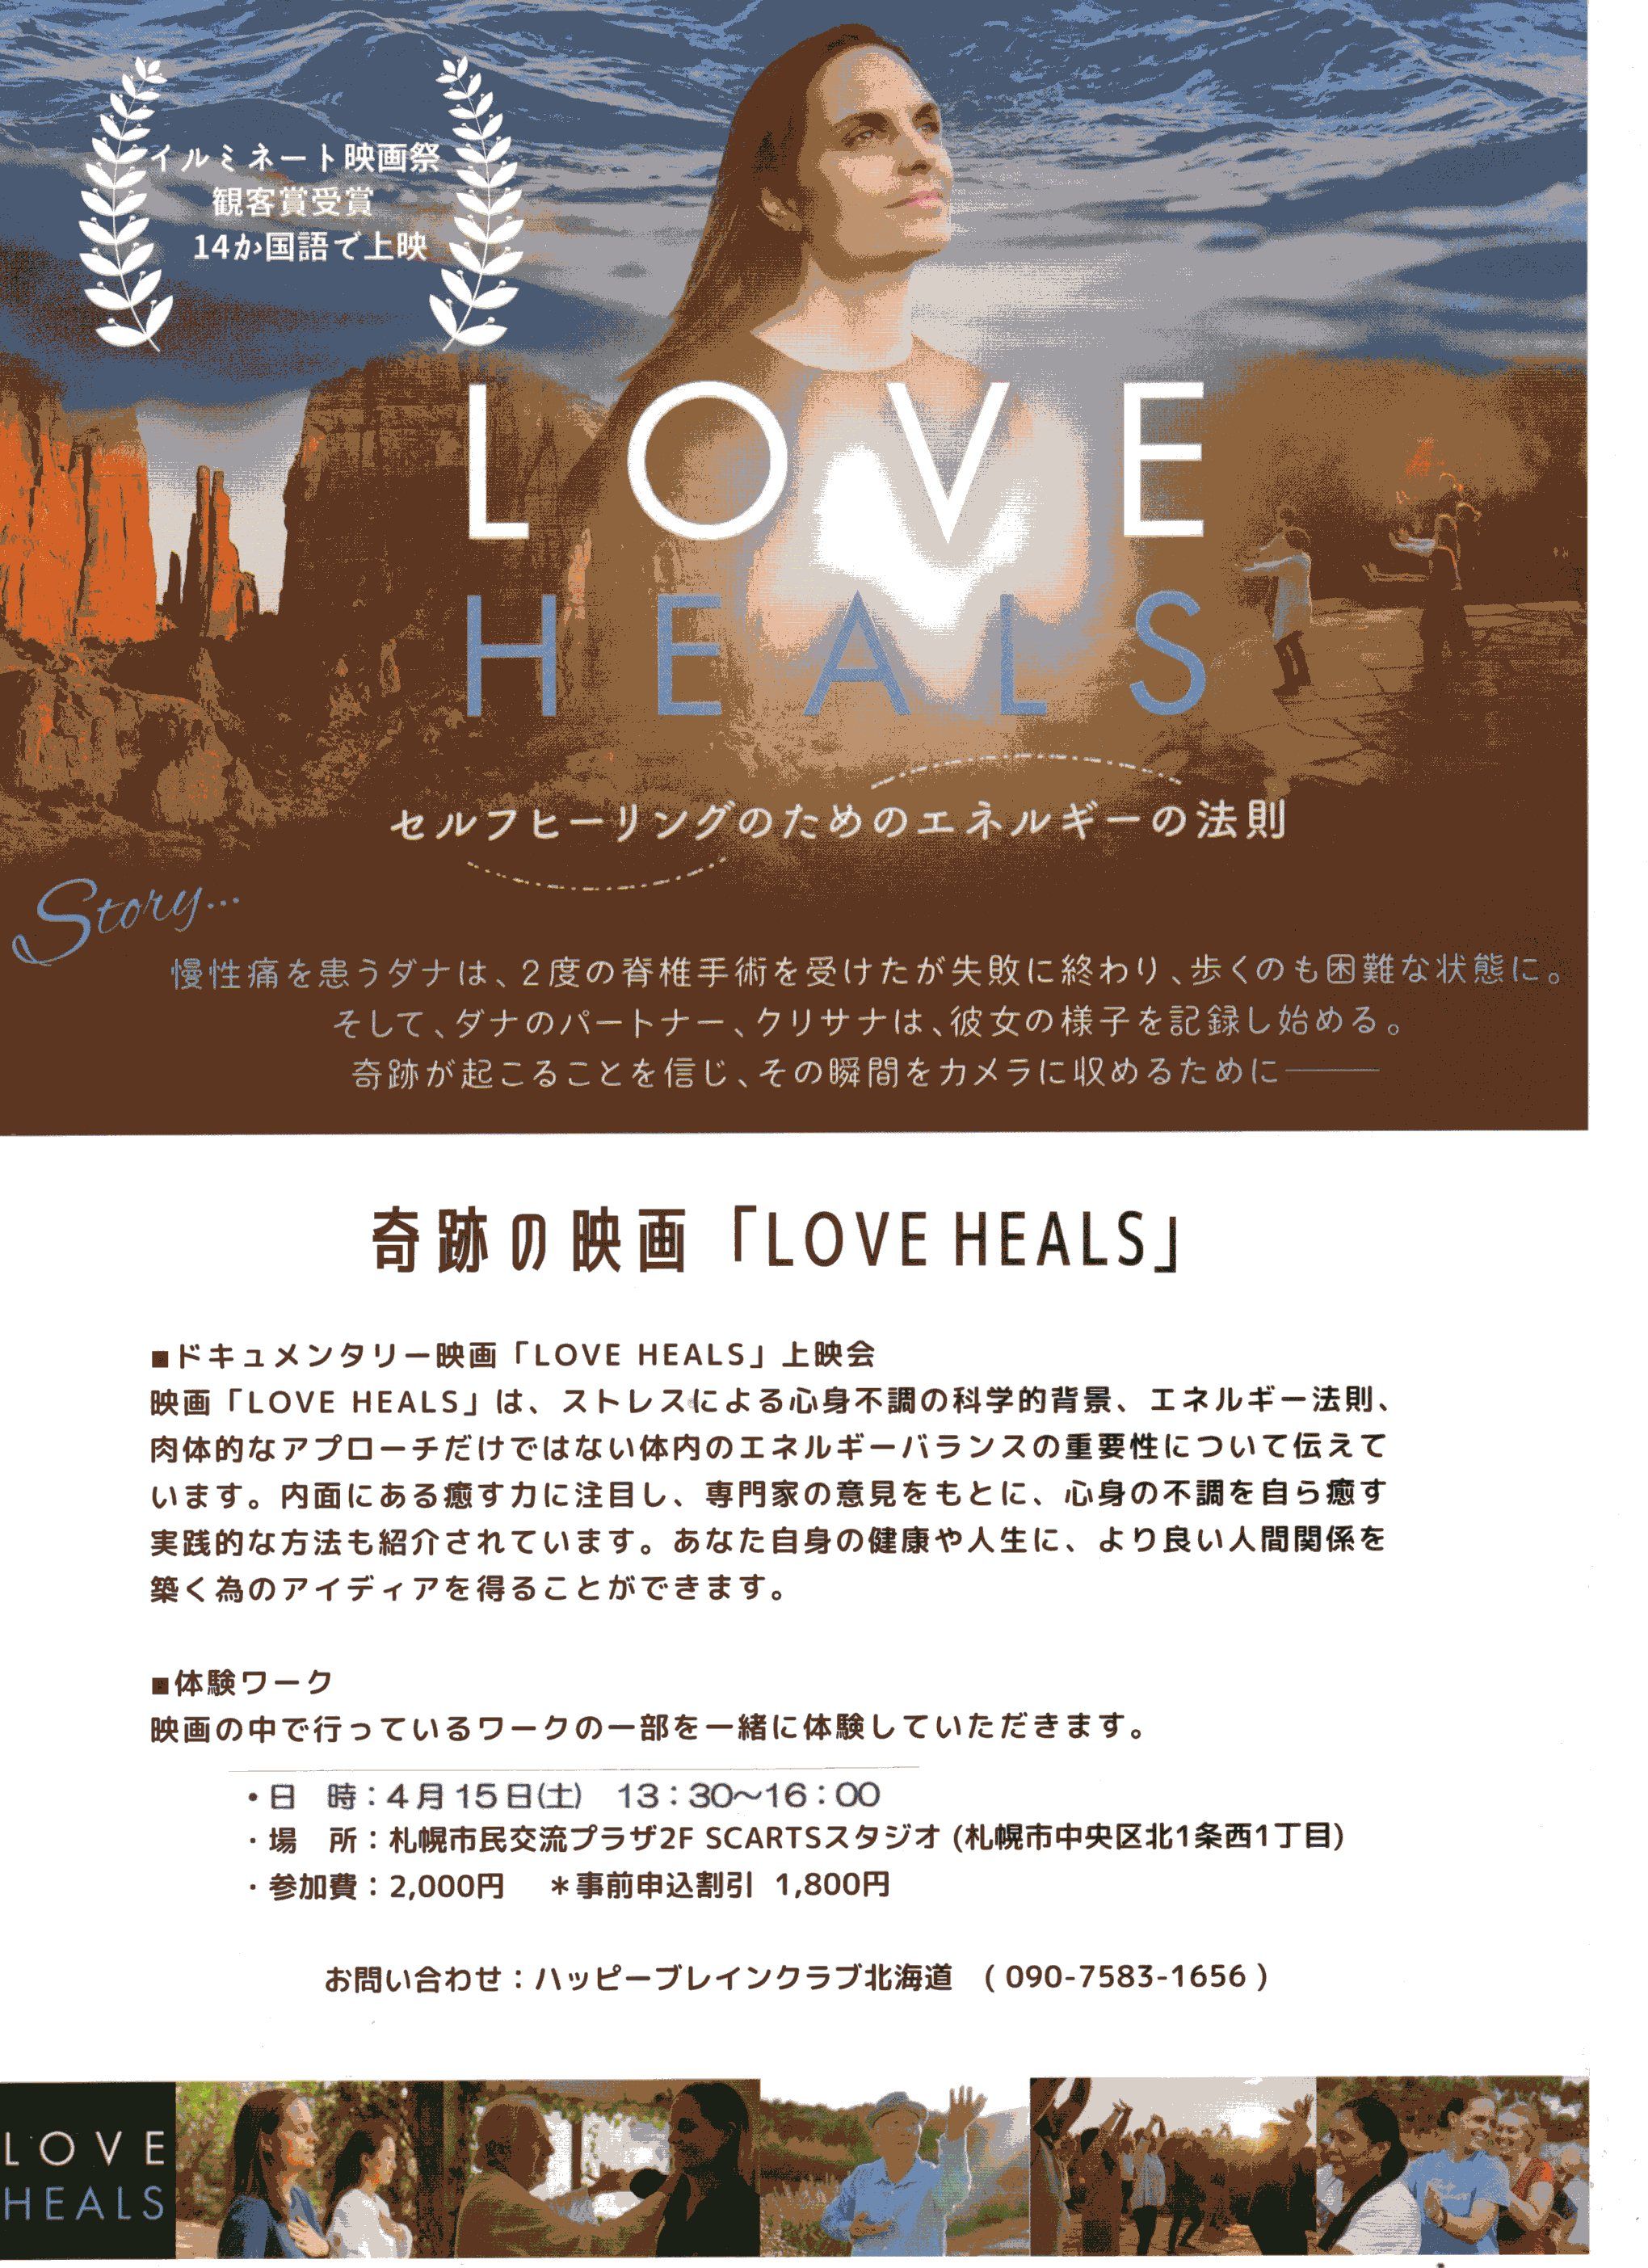 映画「LOVE HEALS」上映会 with 体験ワークショップ